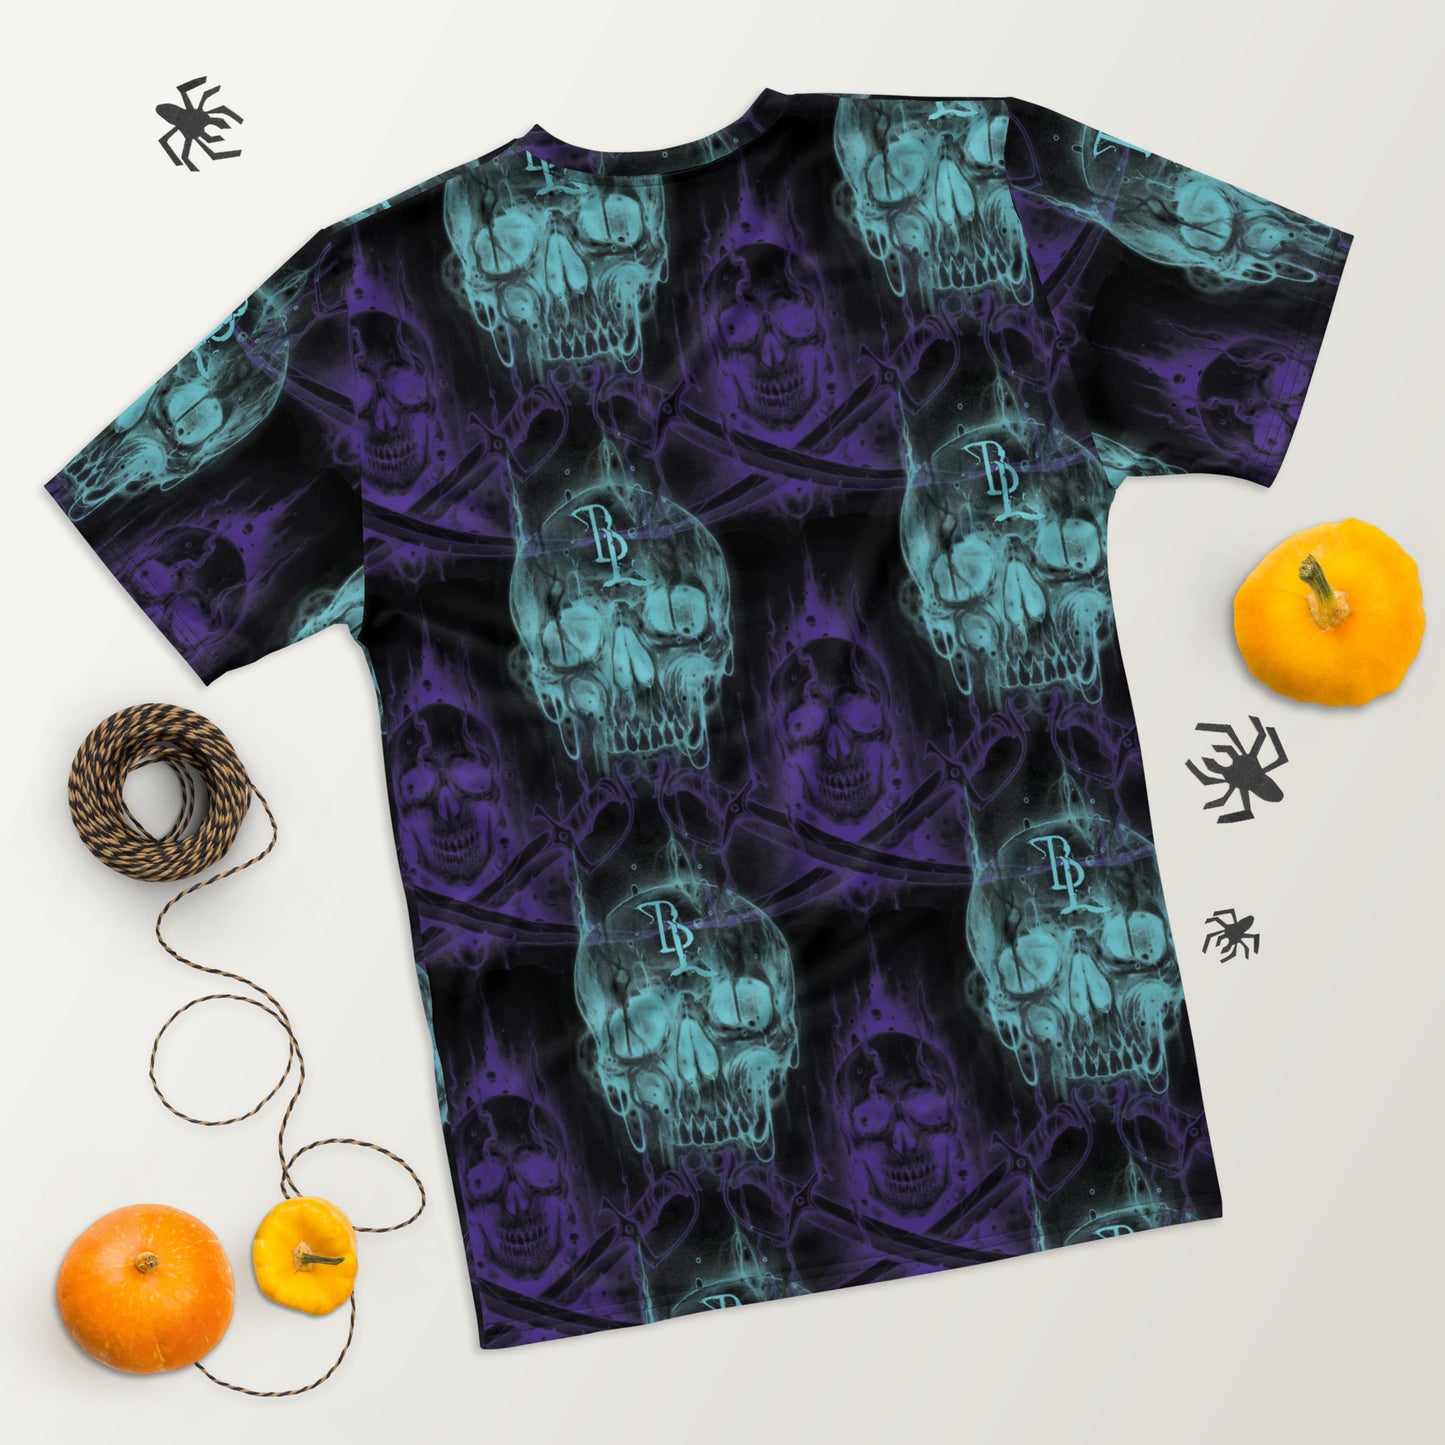 Neon Lagoon Skull 3 Men's t-shirt